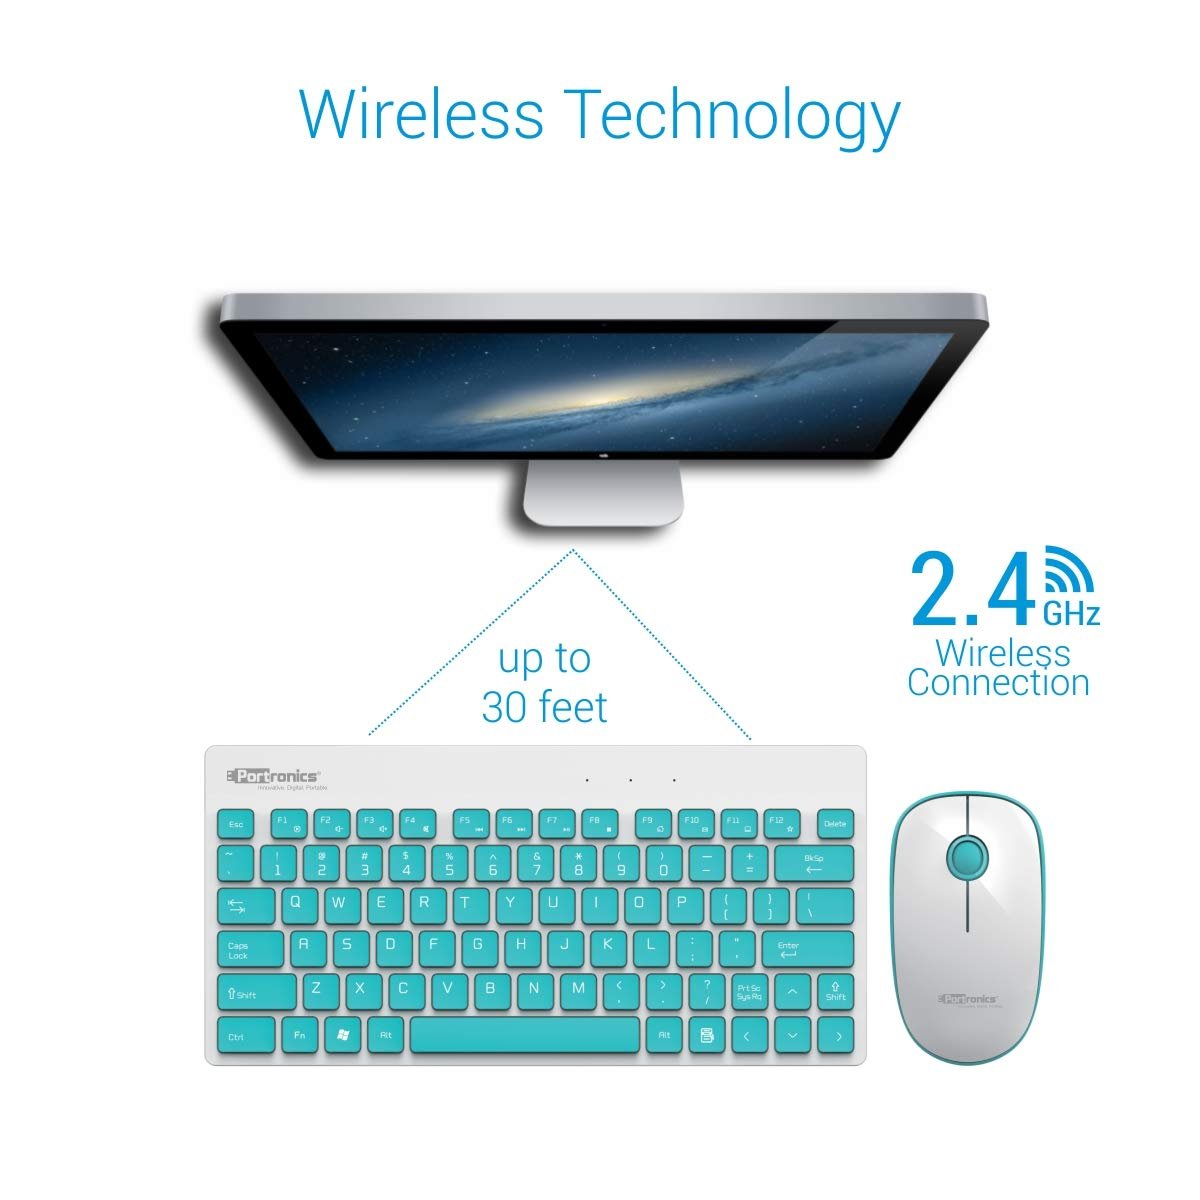 Portronics Key2 Wireless Keyboard & Mouse Combo